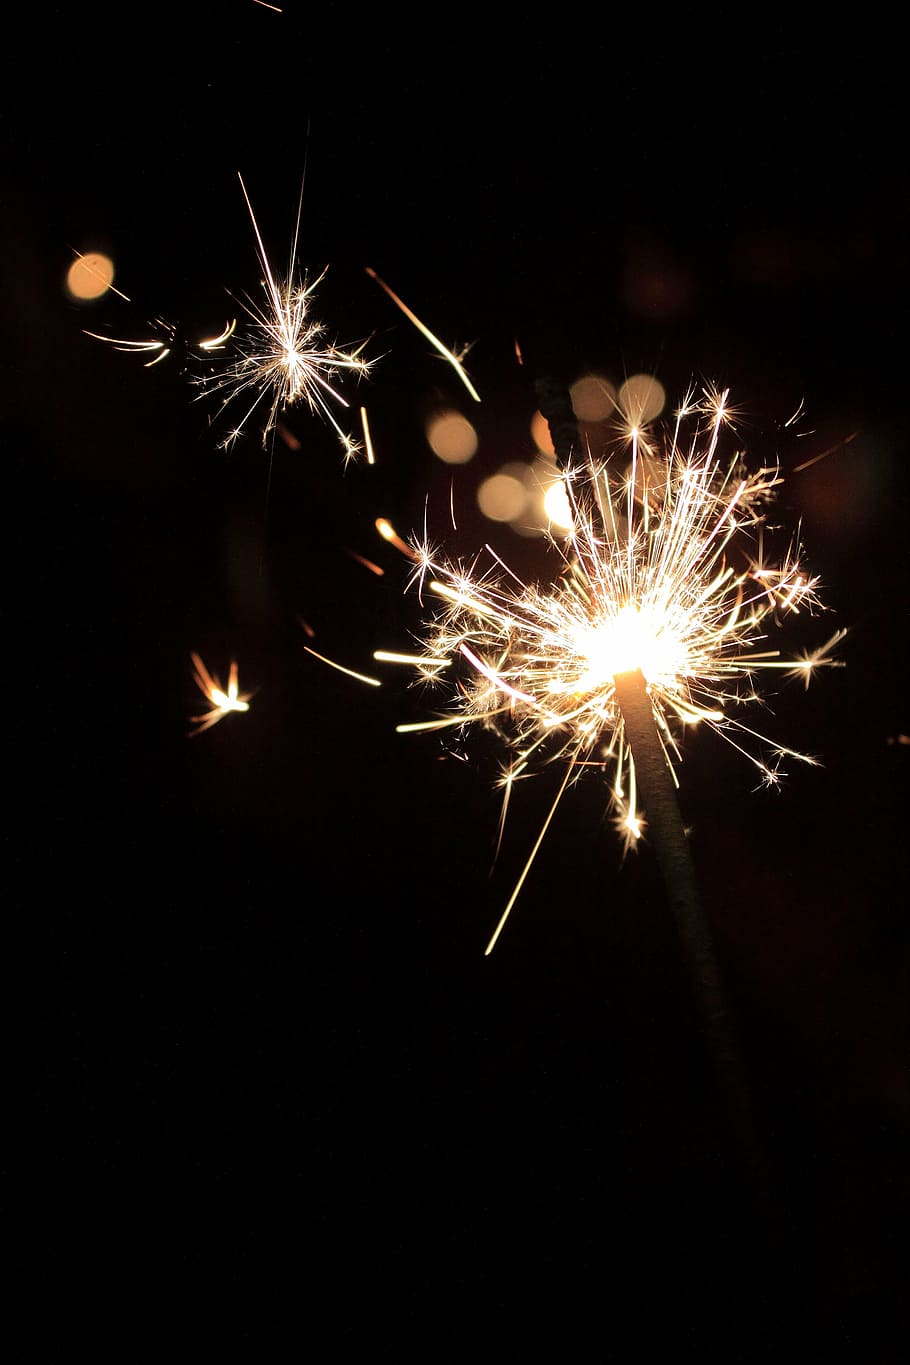 estrelinha iluminada, véspera de ano novo, estrelinha, rádio, fogos de artifício, fogo de artifício - objeto artificial, exibição de fogos de artifício, faíscas, celebração, arte